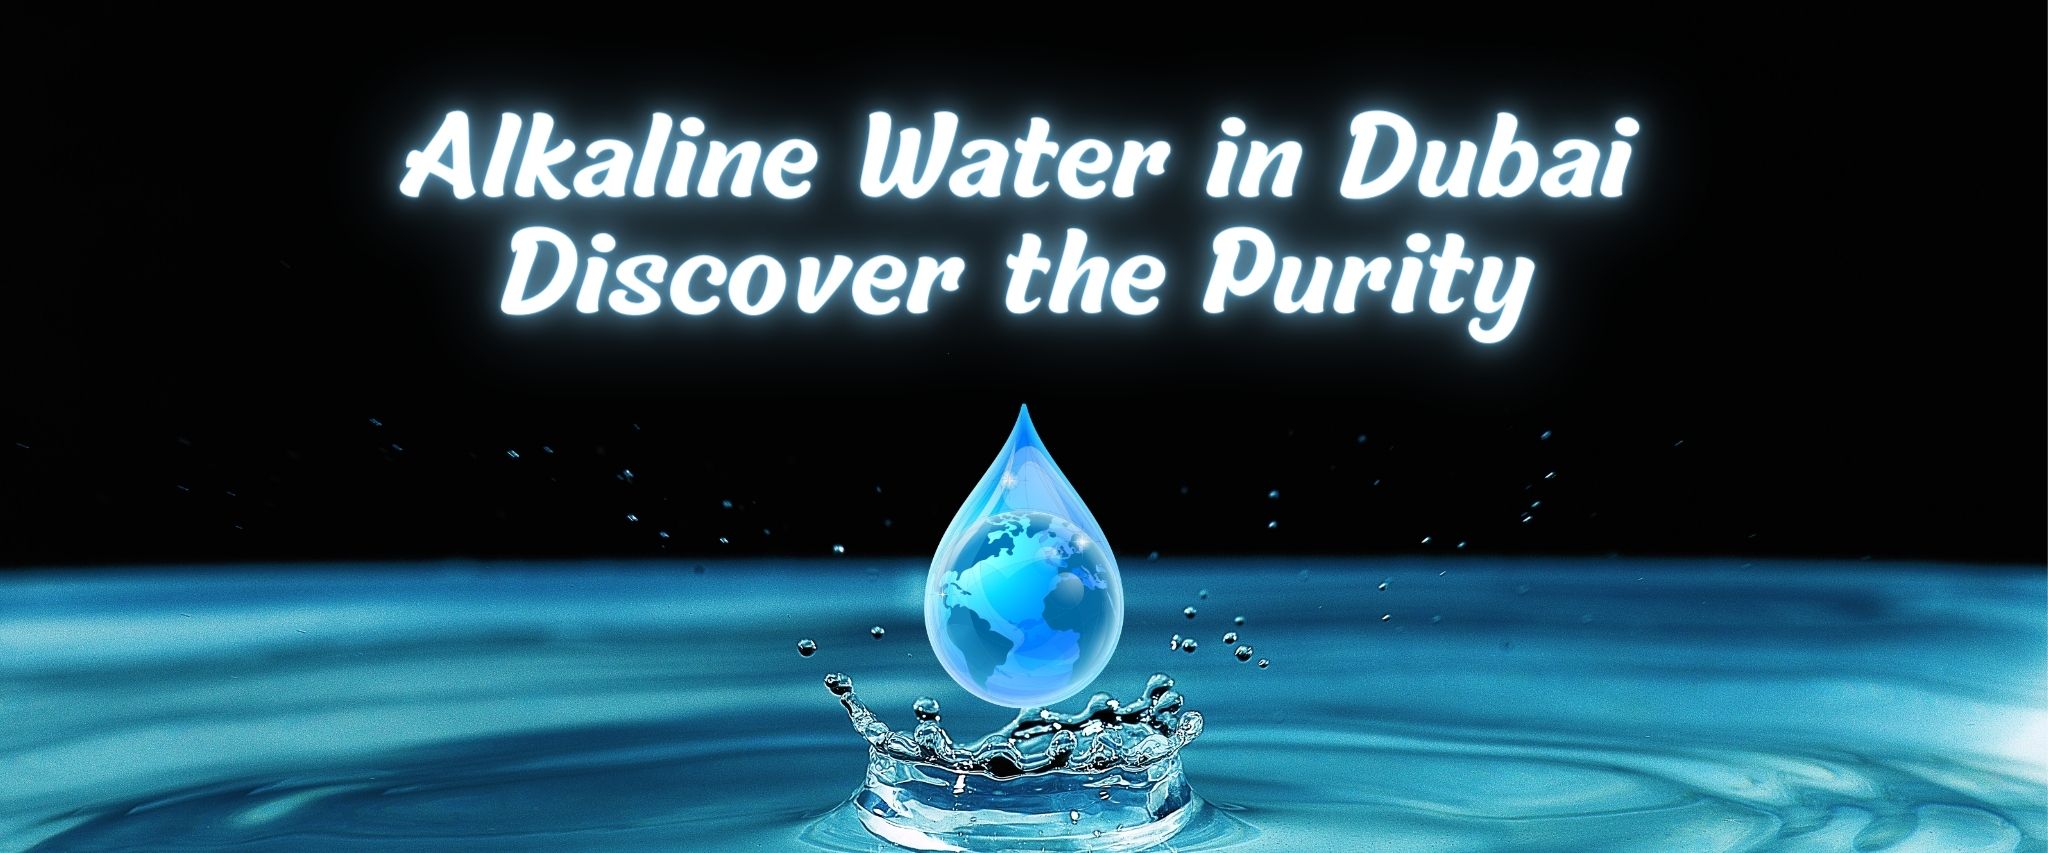 Alkaline Water in Dubai